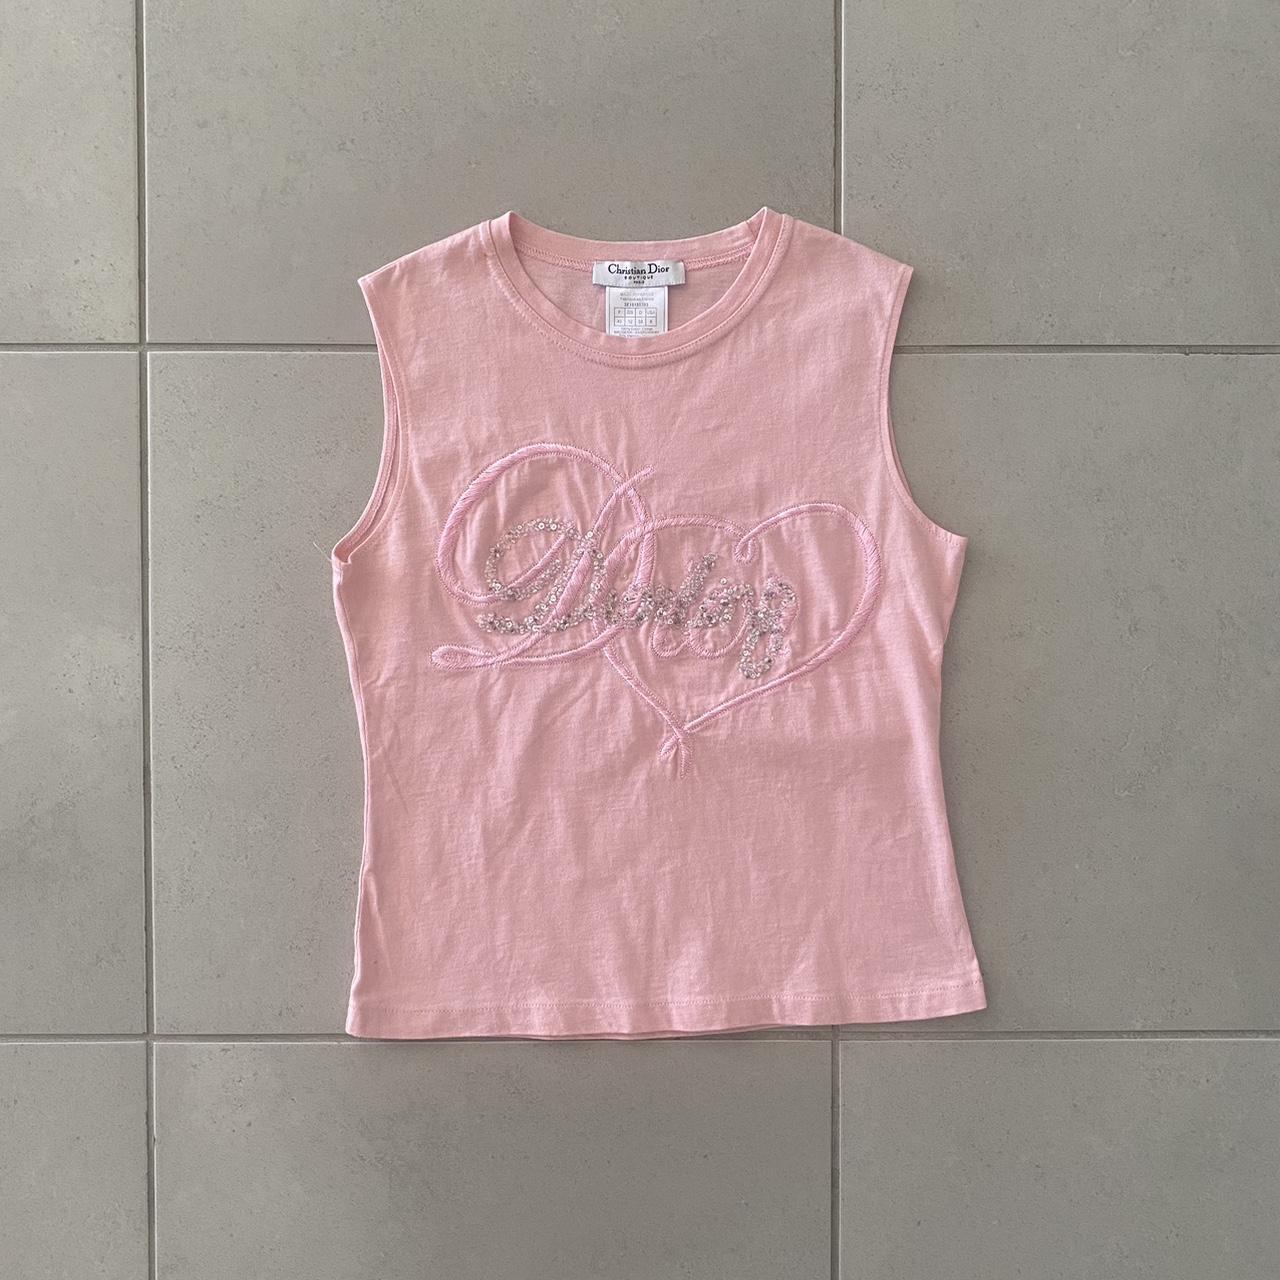 Christian Dior Women's Pink Shirt | Depop